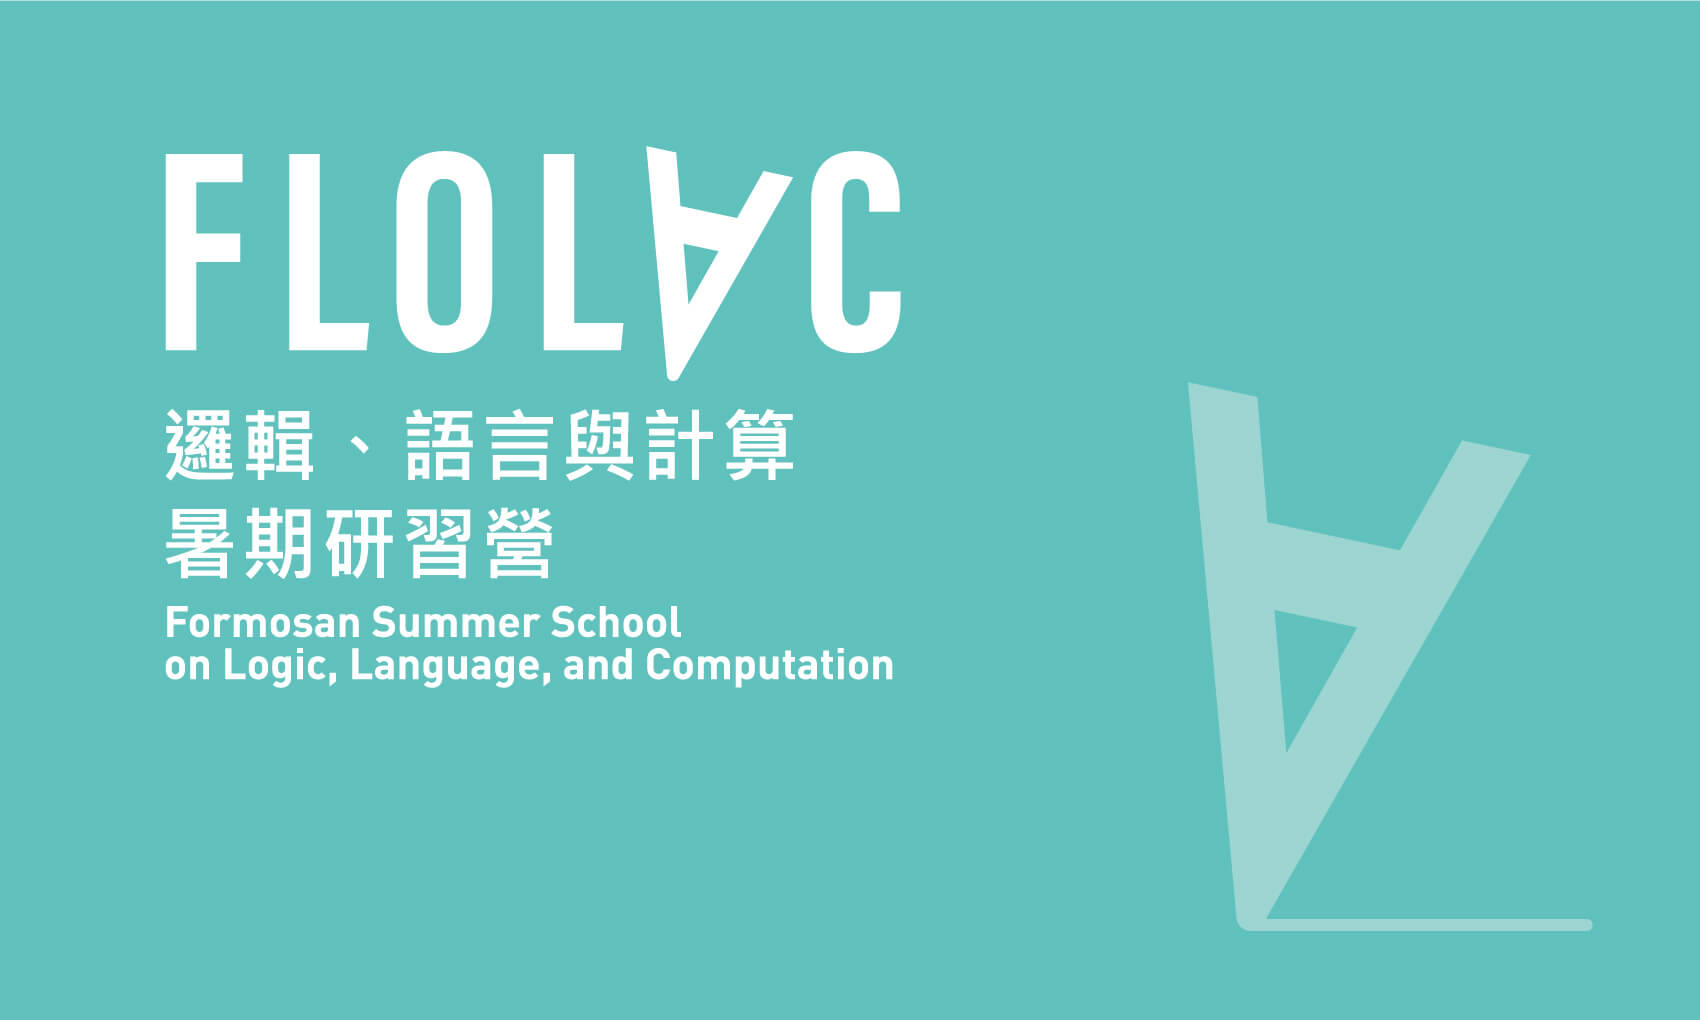 中研院 FLOLAC邏輯、語言與計算暑期研習營